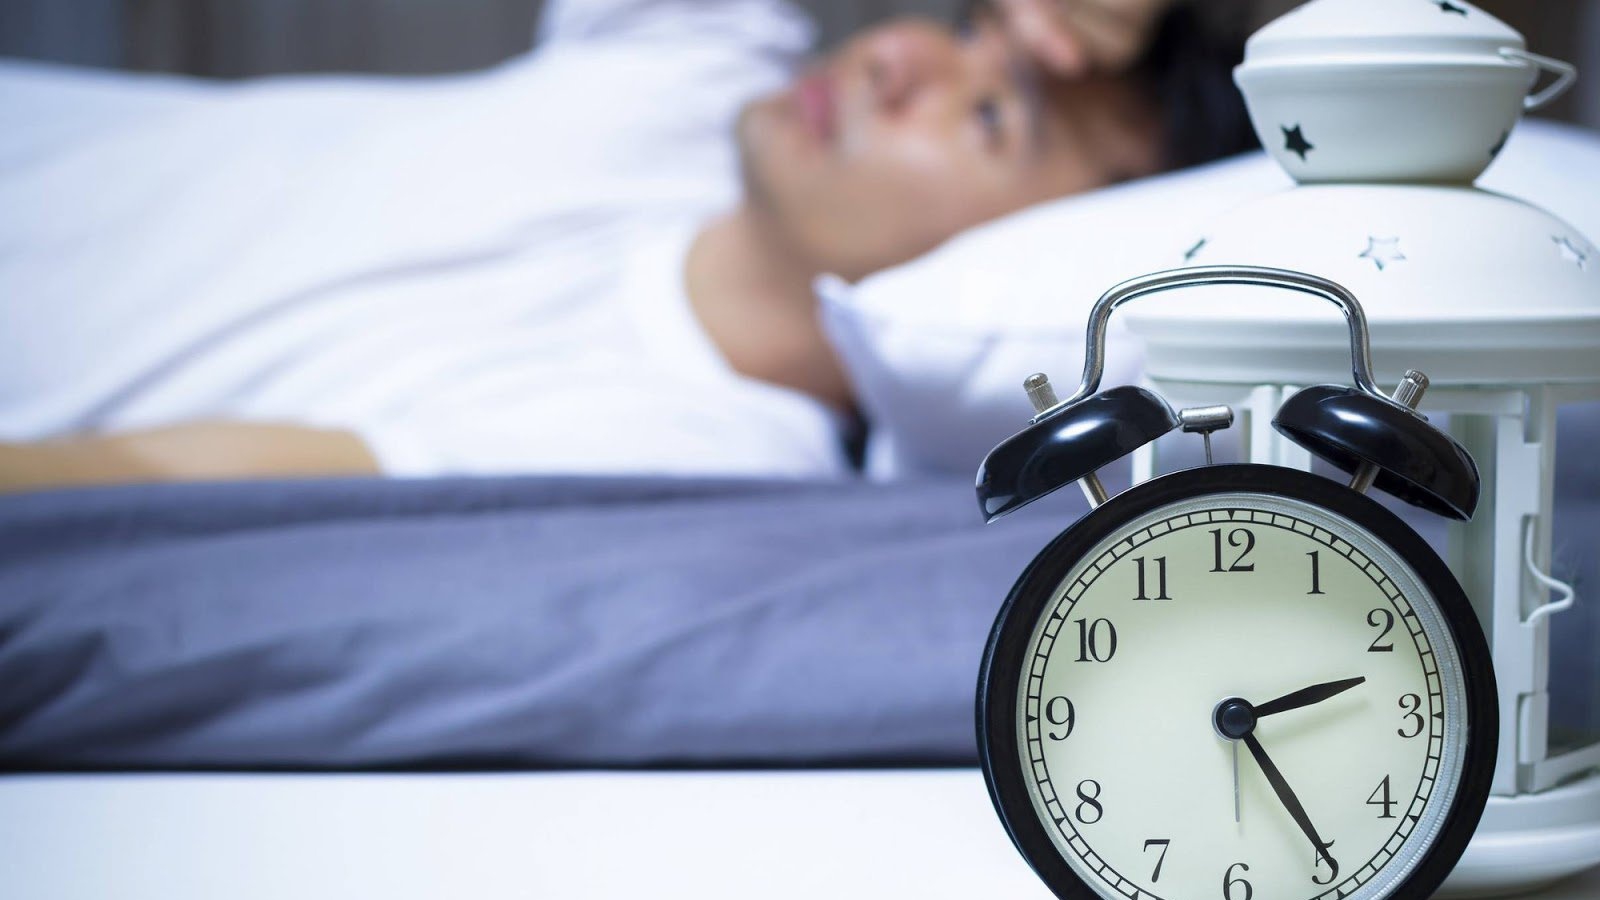 Ngoài việc dùng thuốc ngủ, có cách nào khác để đạt được giấc ngủ tốt?